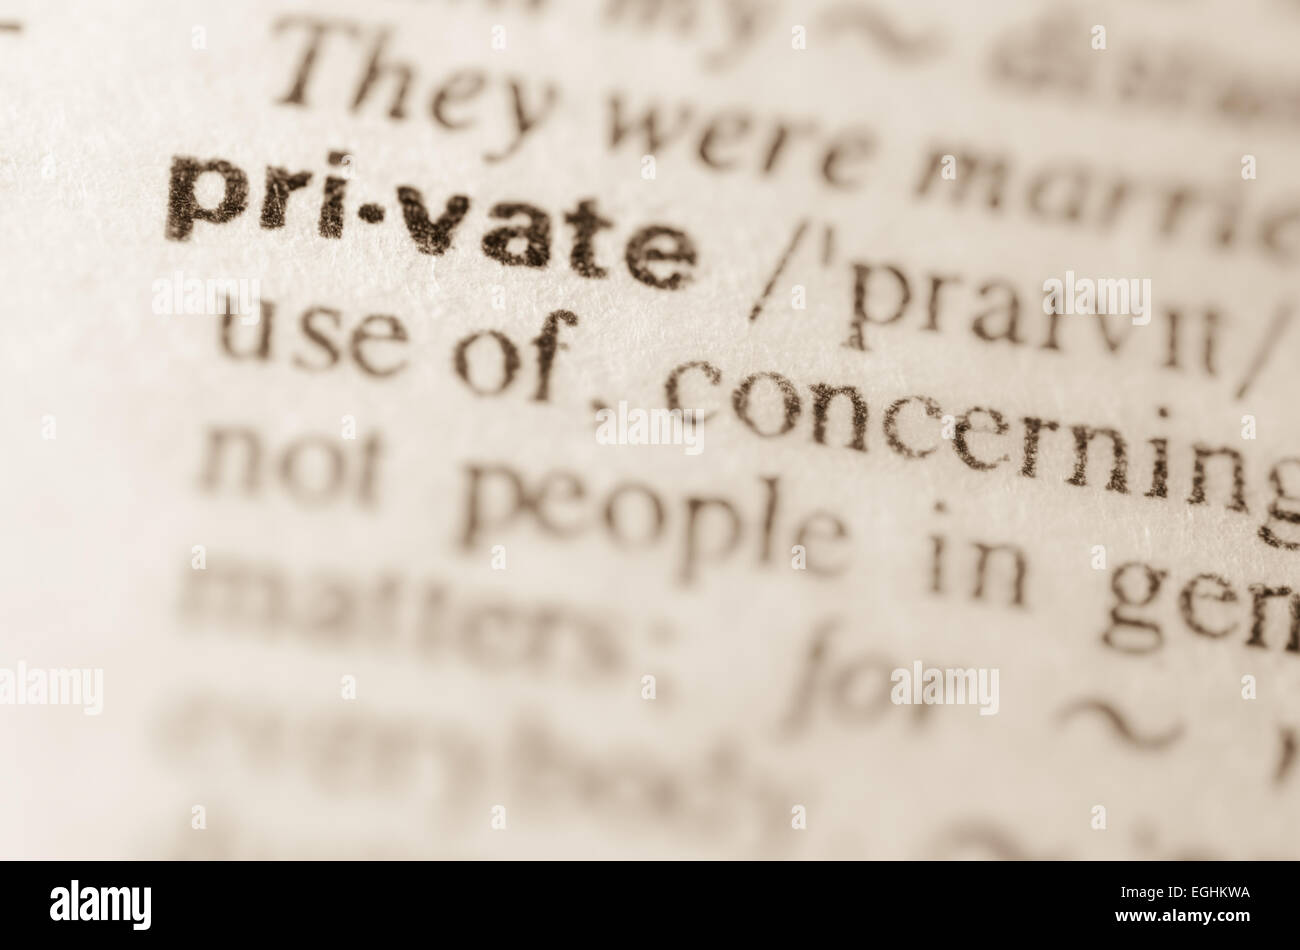 Private Definition